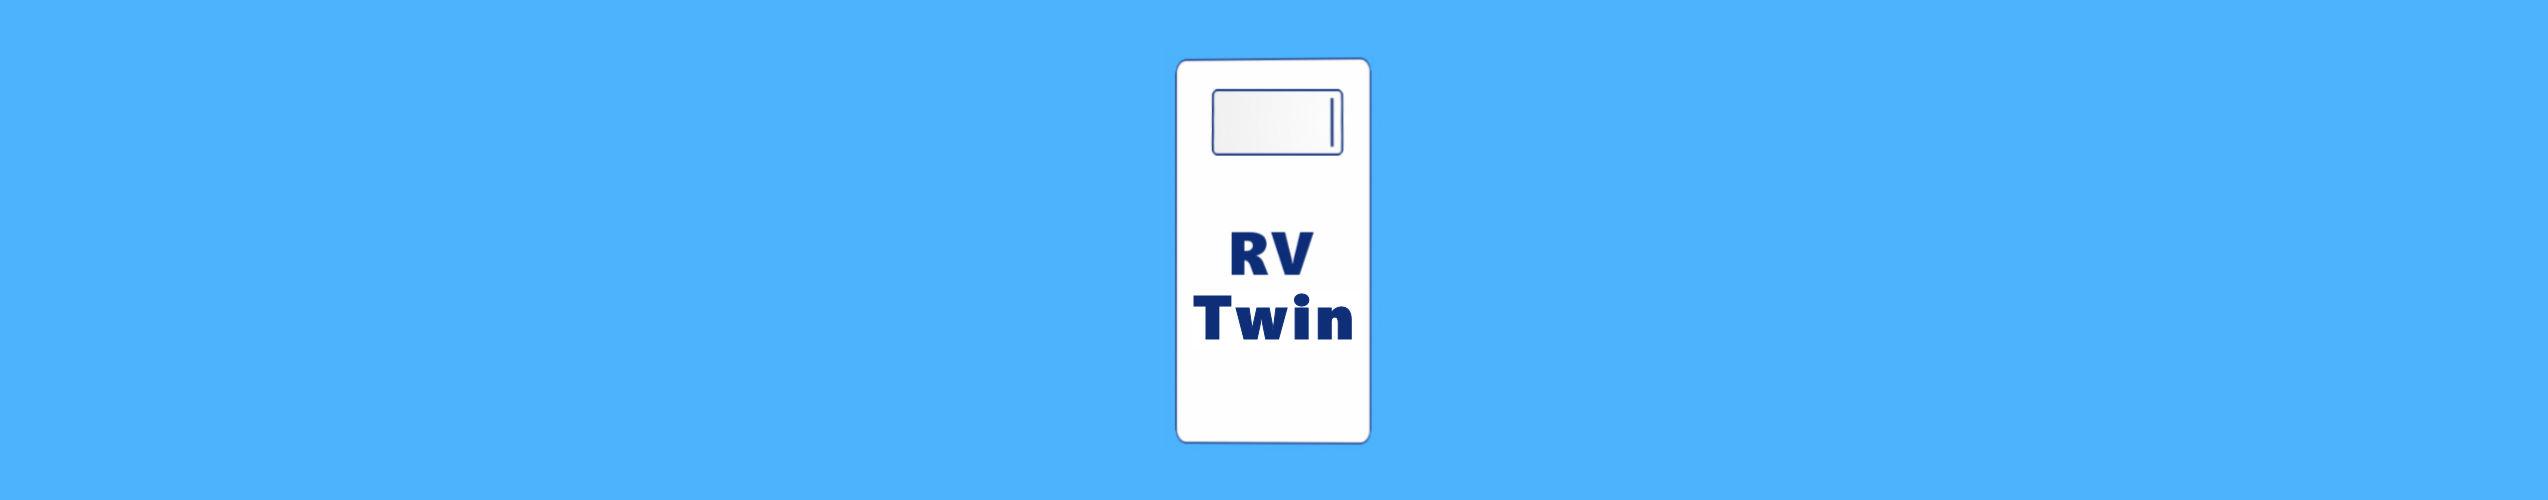 rv twin mattress size